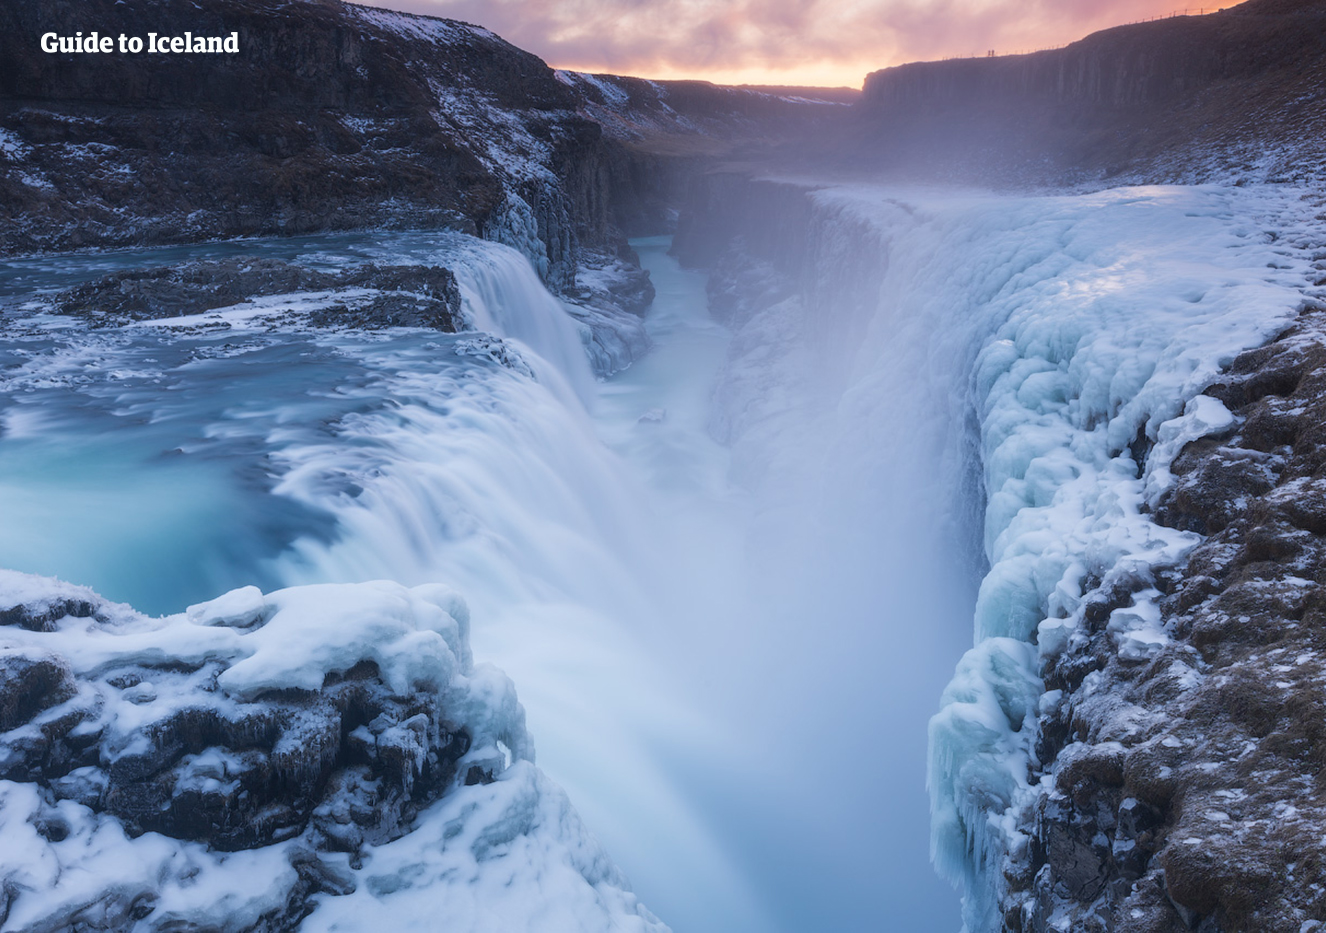 El rocío de la popular cascada Gullfoss refresca con agua de glaciar Langjökull las caras de cualquiera que se acerque.